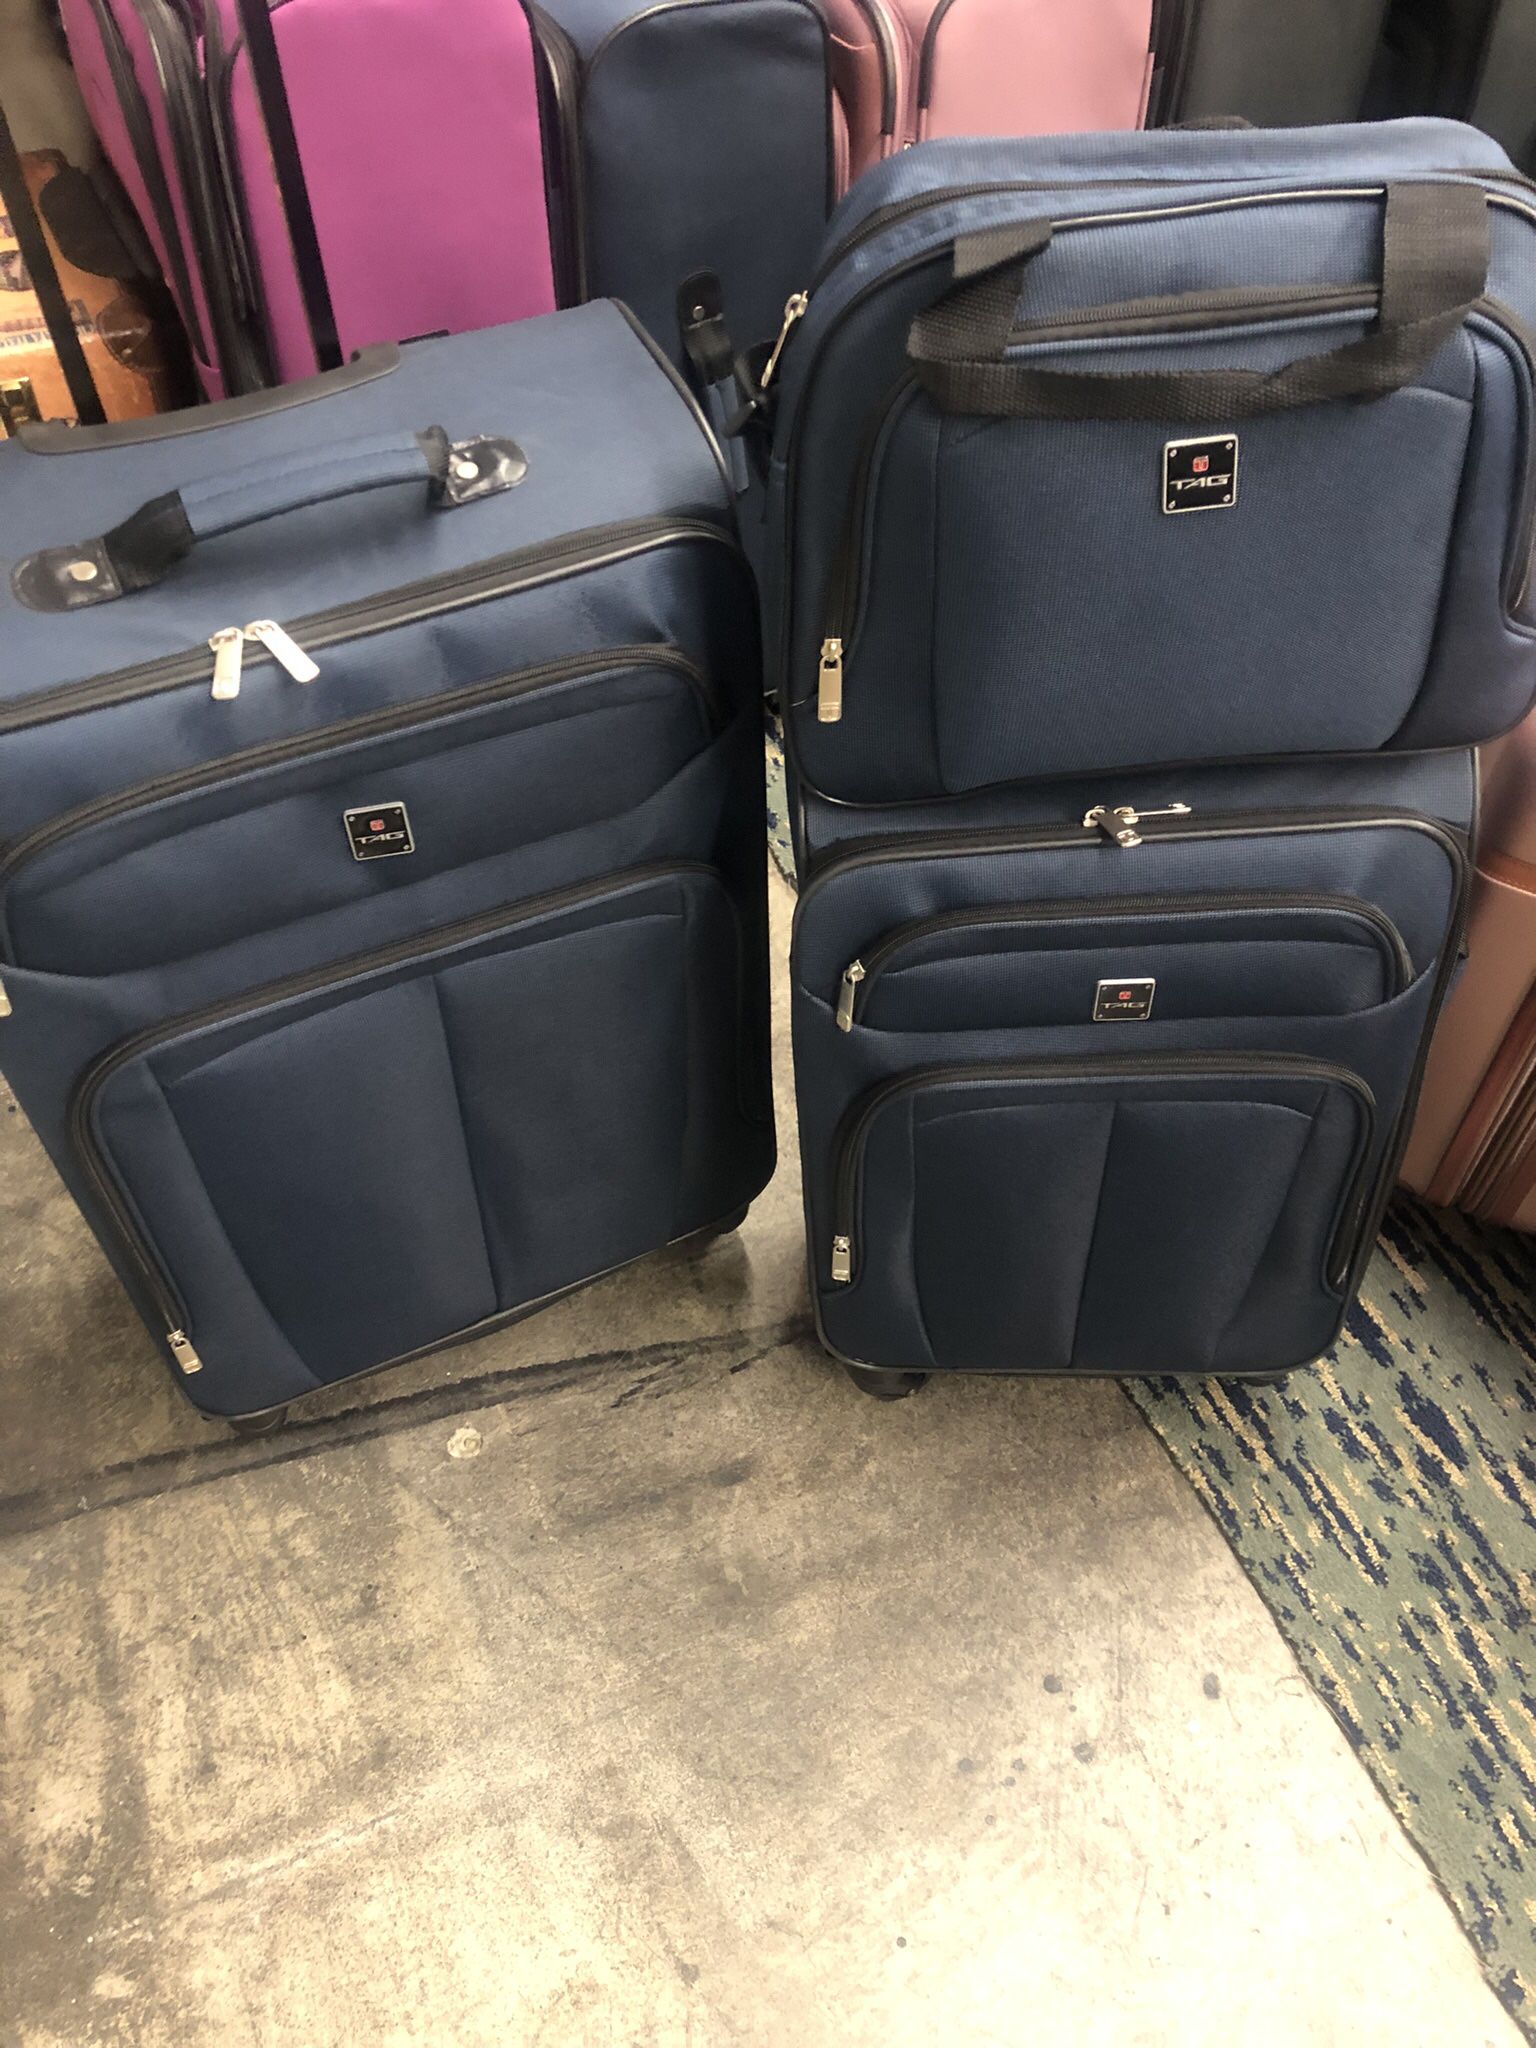 5 Pcs Luggage Set New